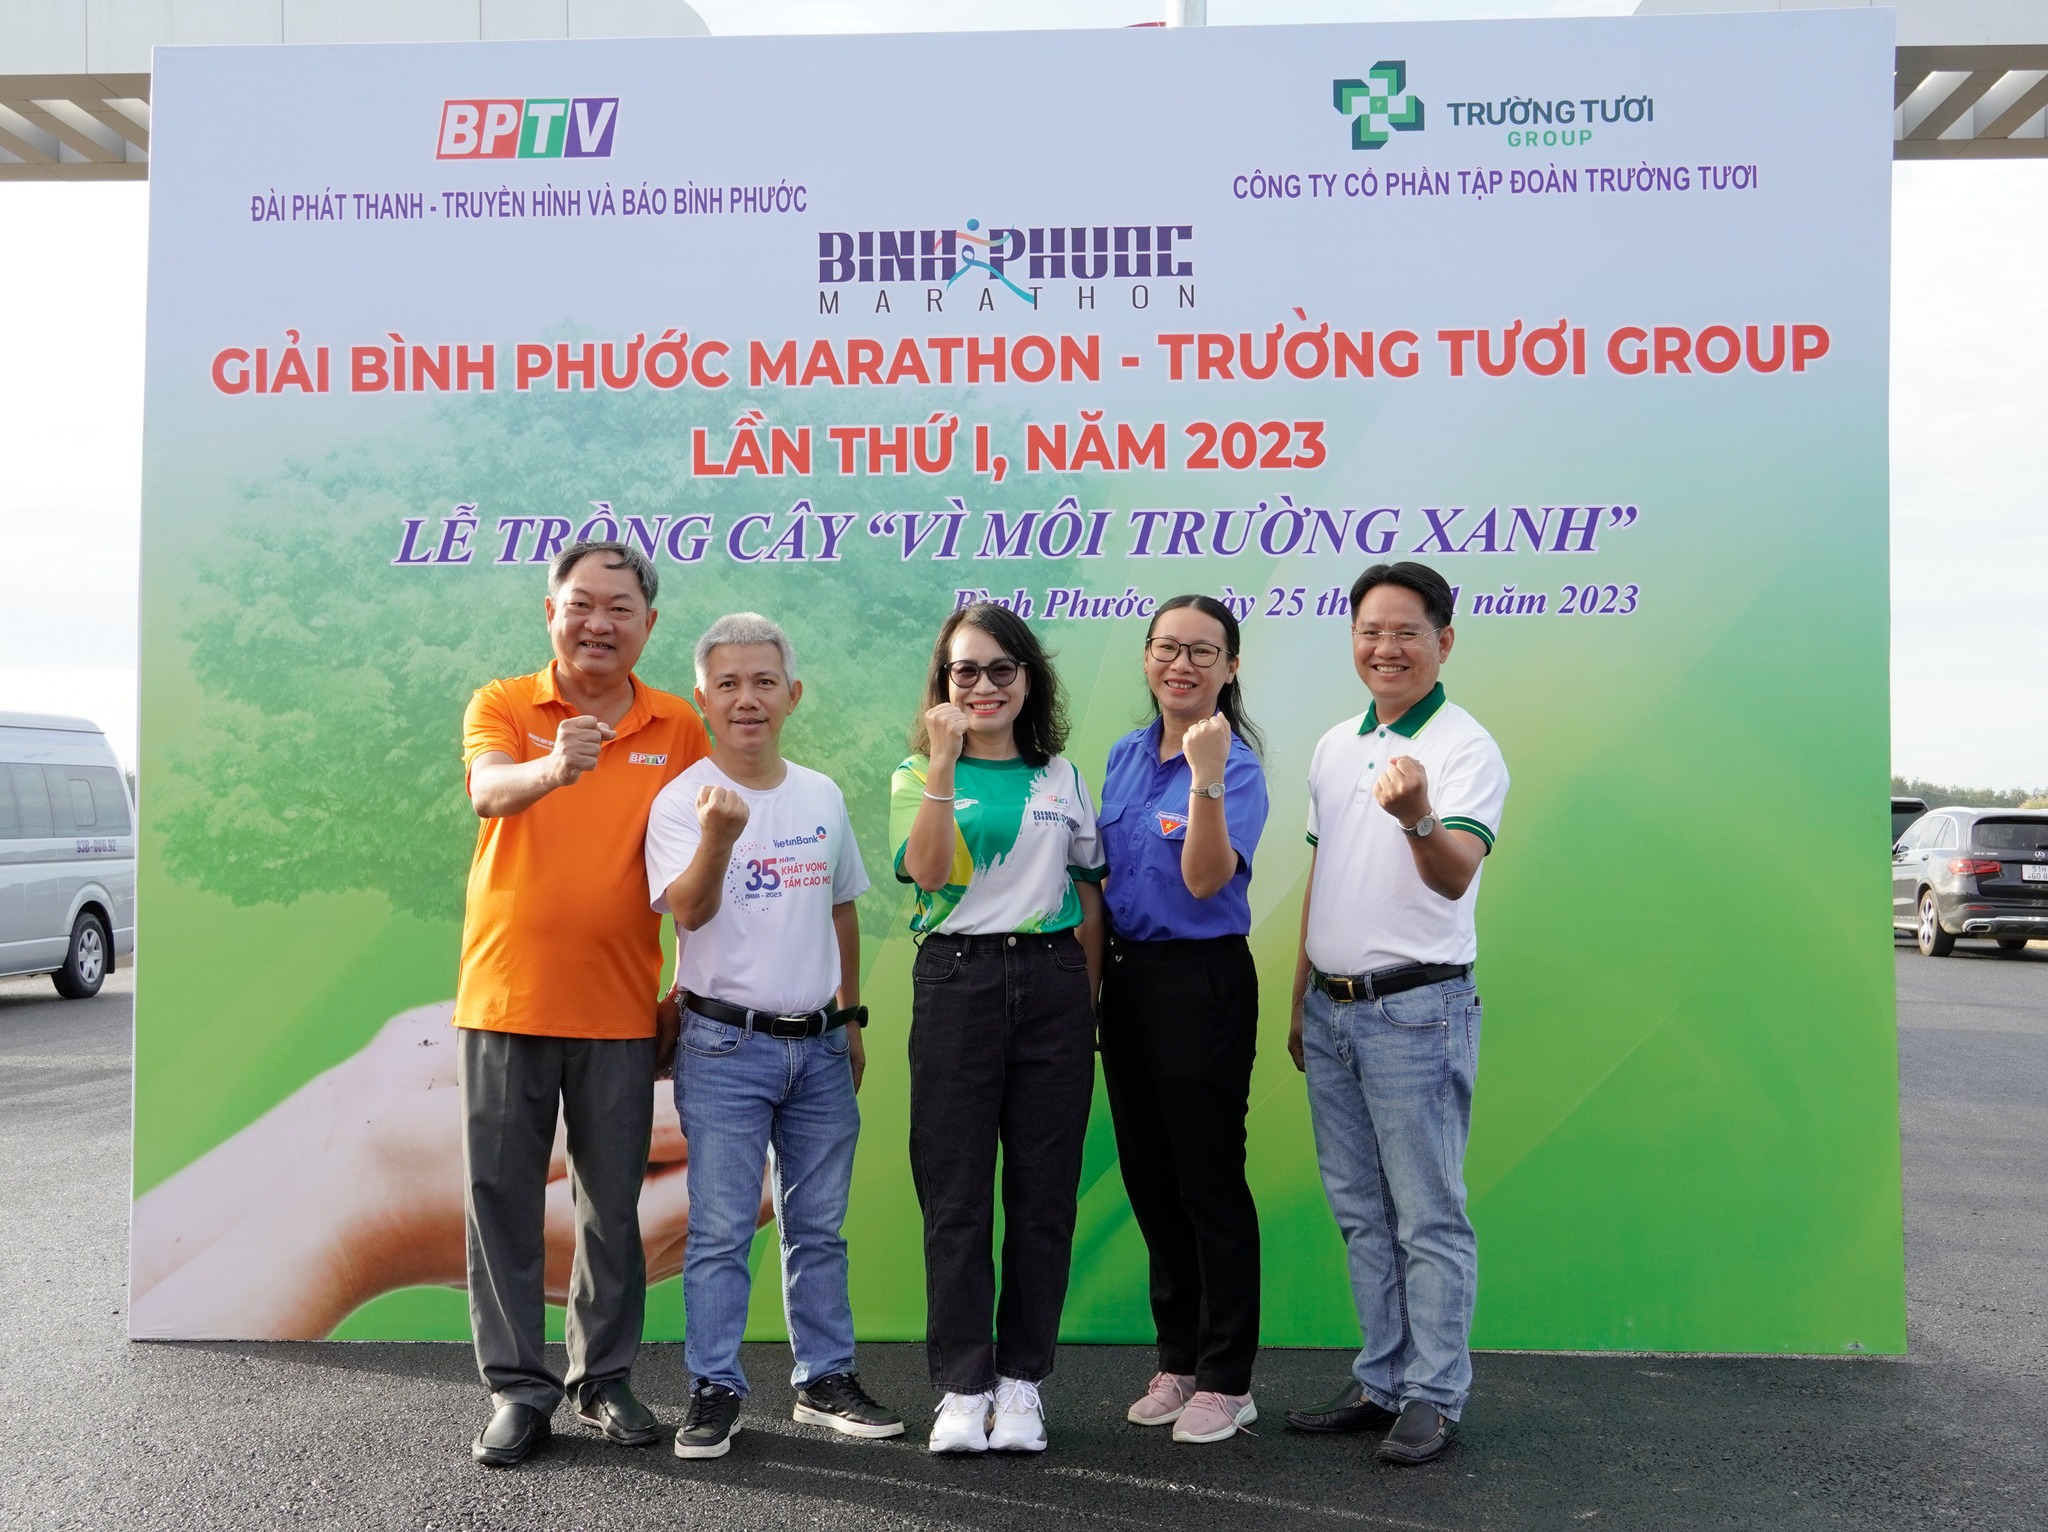 Sự kiện Trồng cây vì môi trường xanh tại KCN Tân Phú